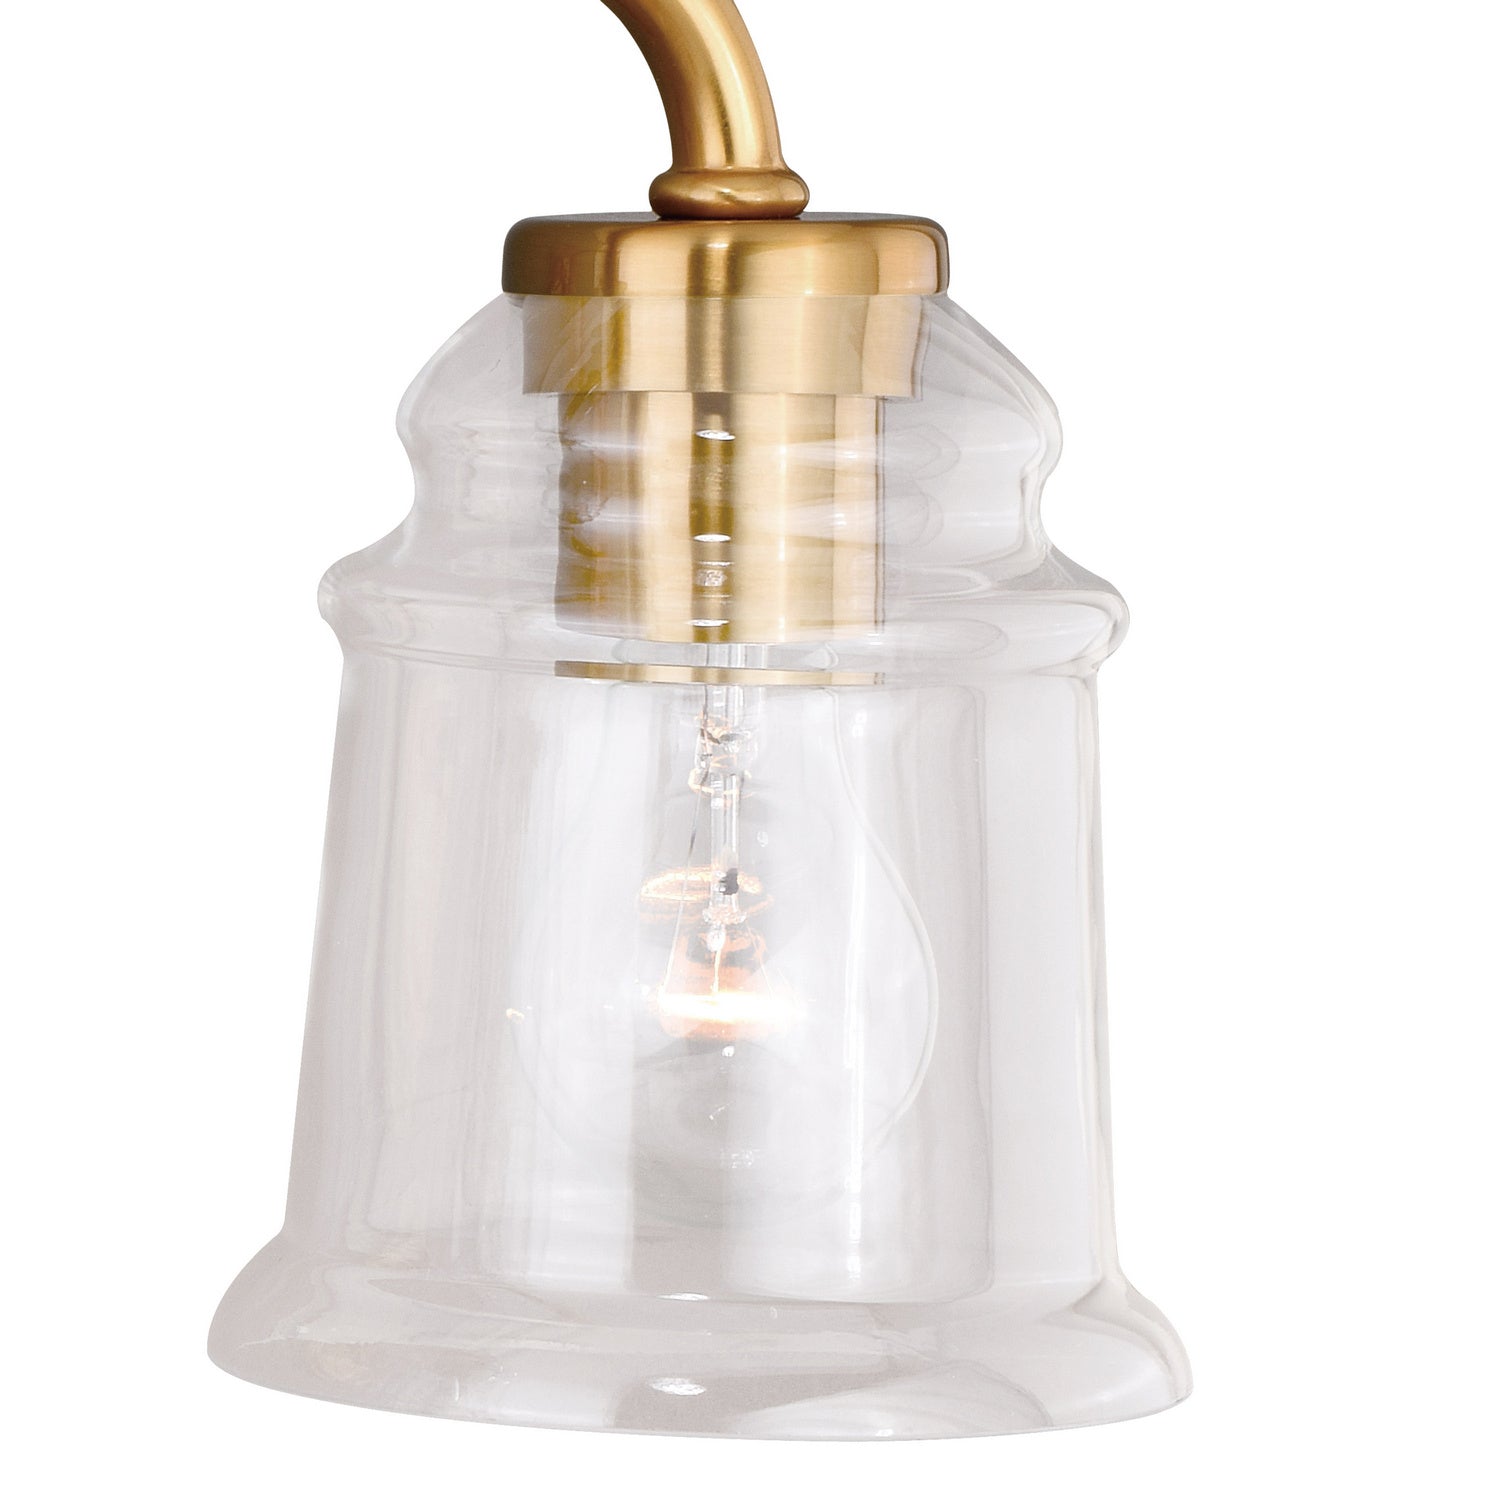 Vaxcel Toledo W0264 Bath Vanity Light 22 in. wide - Natural Brass